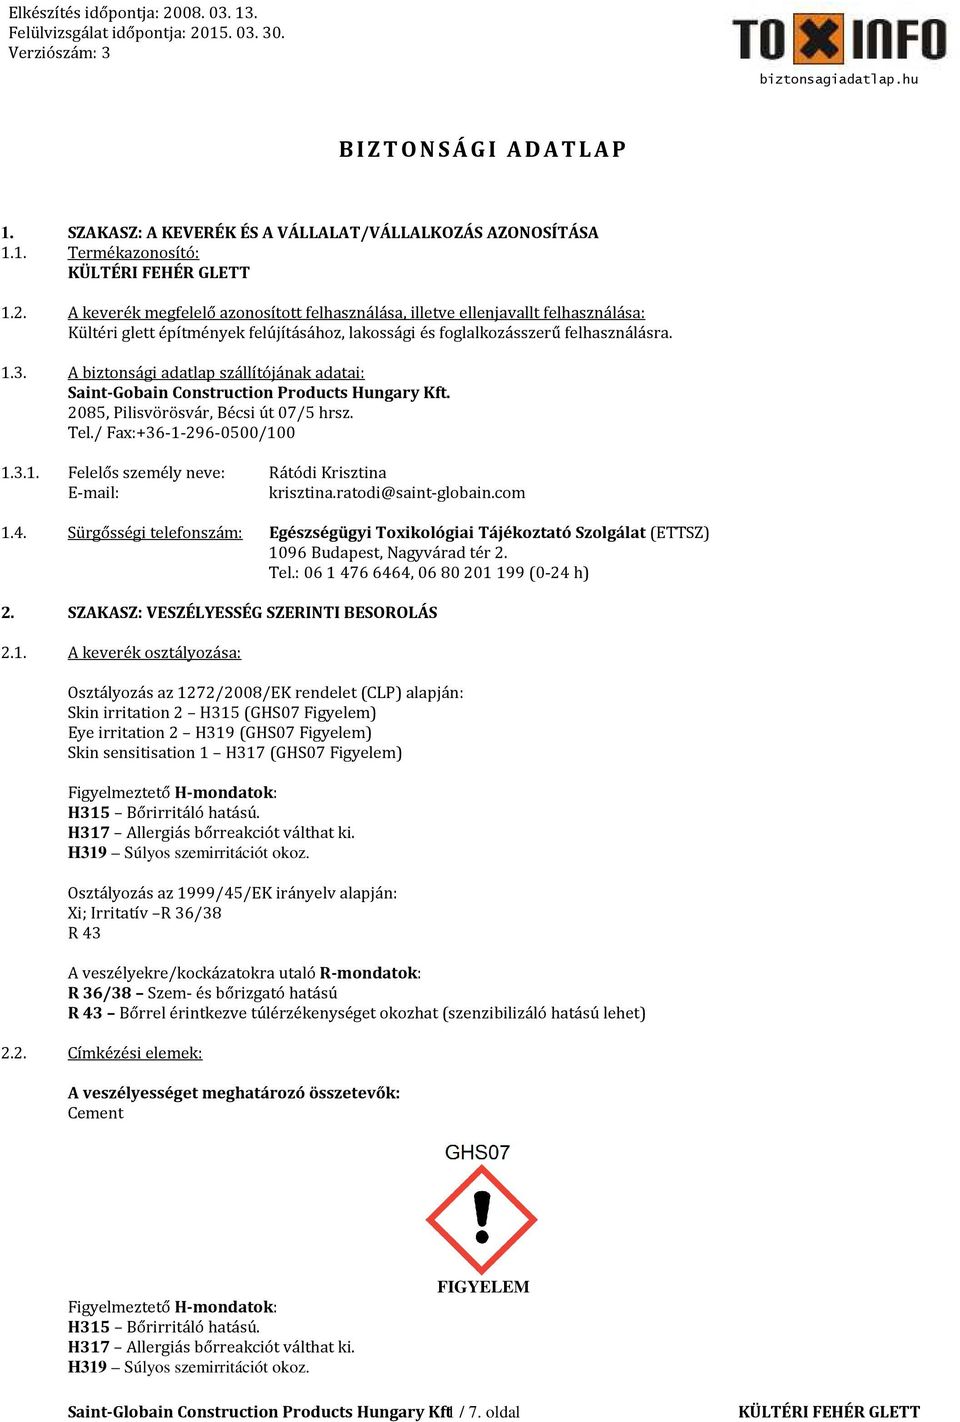 A biztonsági adatlap szállítójának adatai: Saint-Gobain Construction Products Hungary Kft. 2085, Pilisvörösvár, Bécsi út 07/5 hrsz. Tel./ Fax:+36-1-